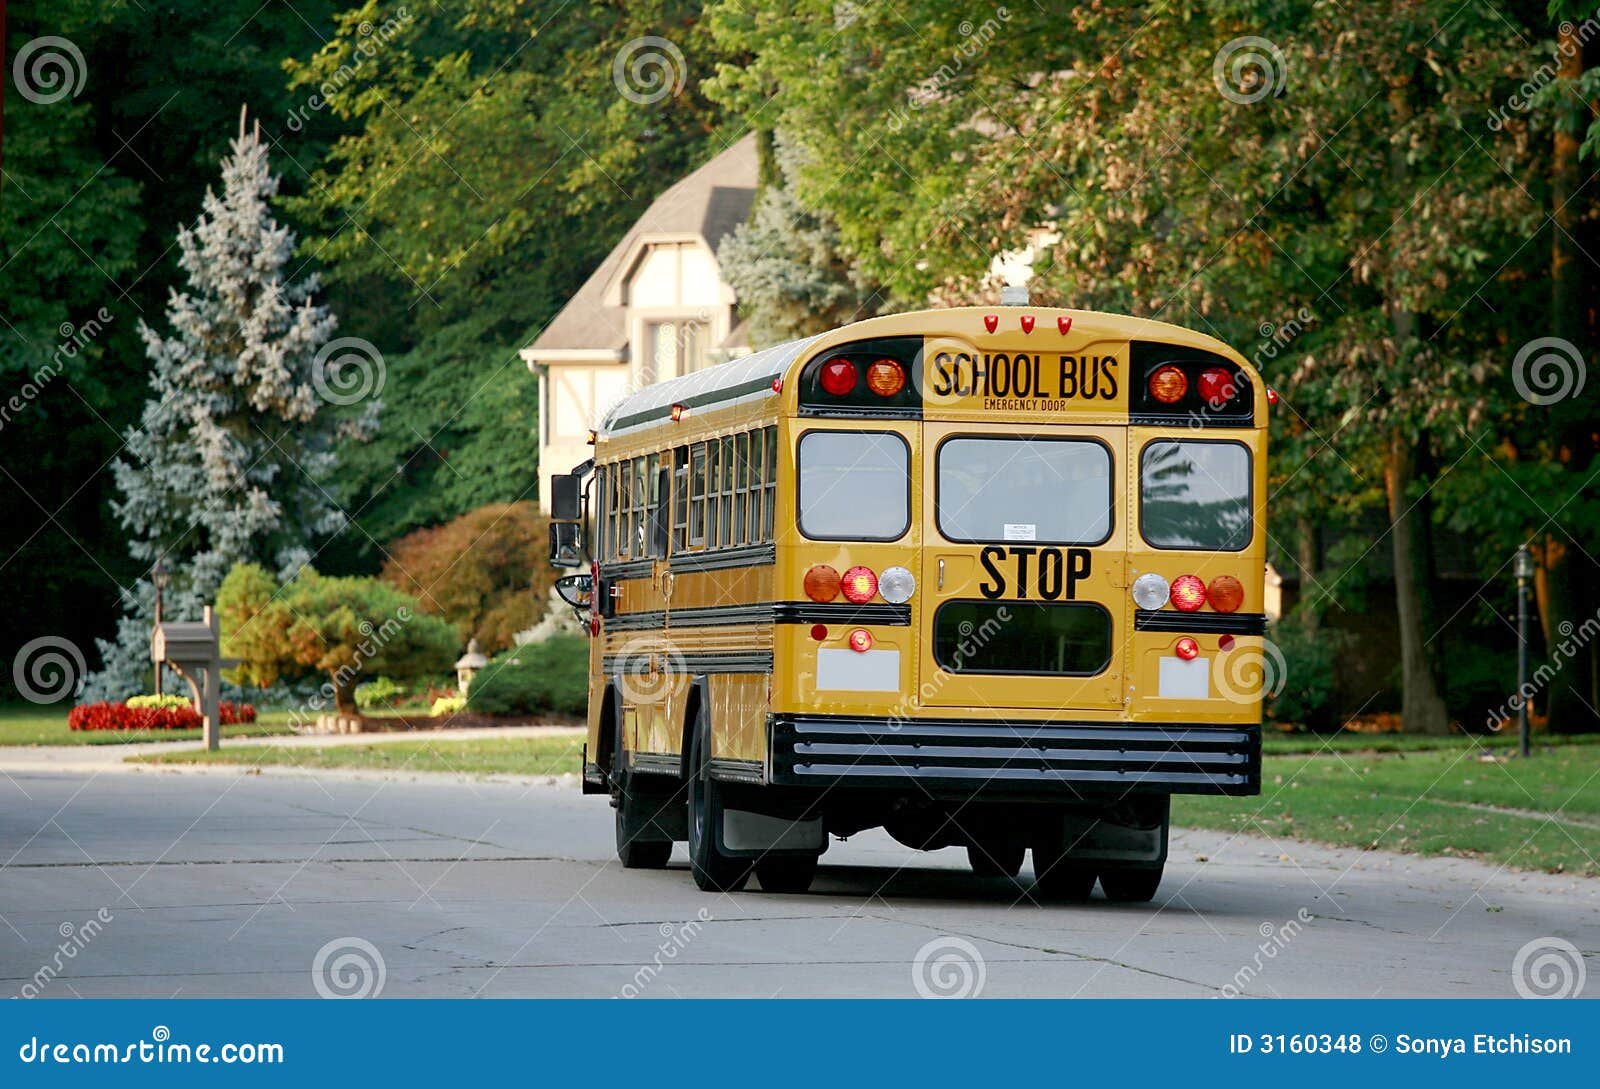 school bus in neighborhood